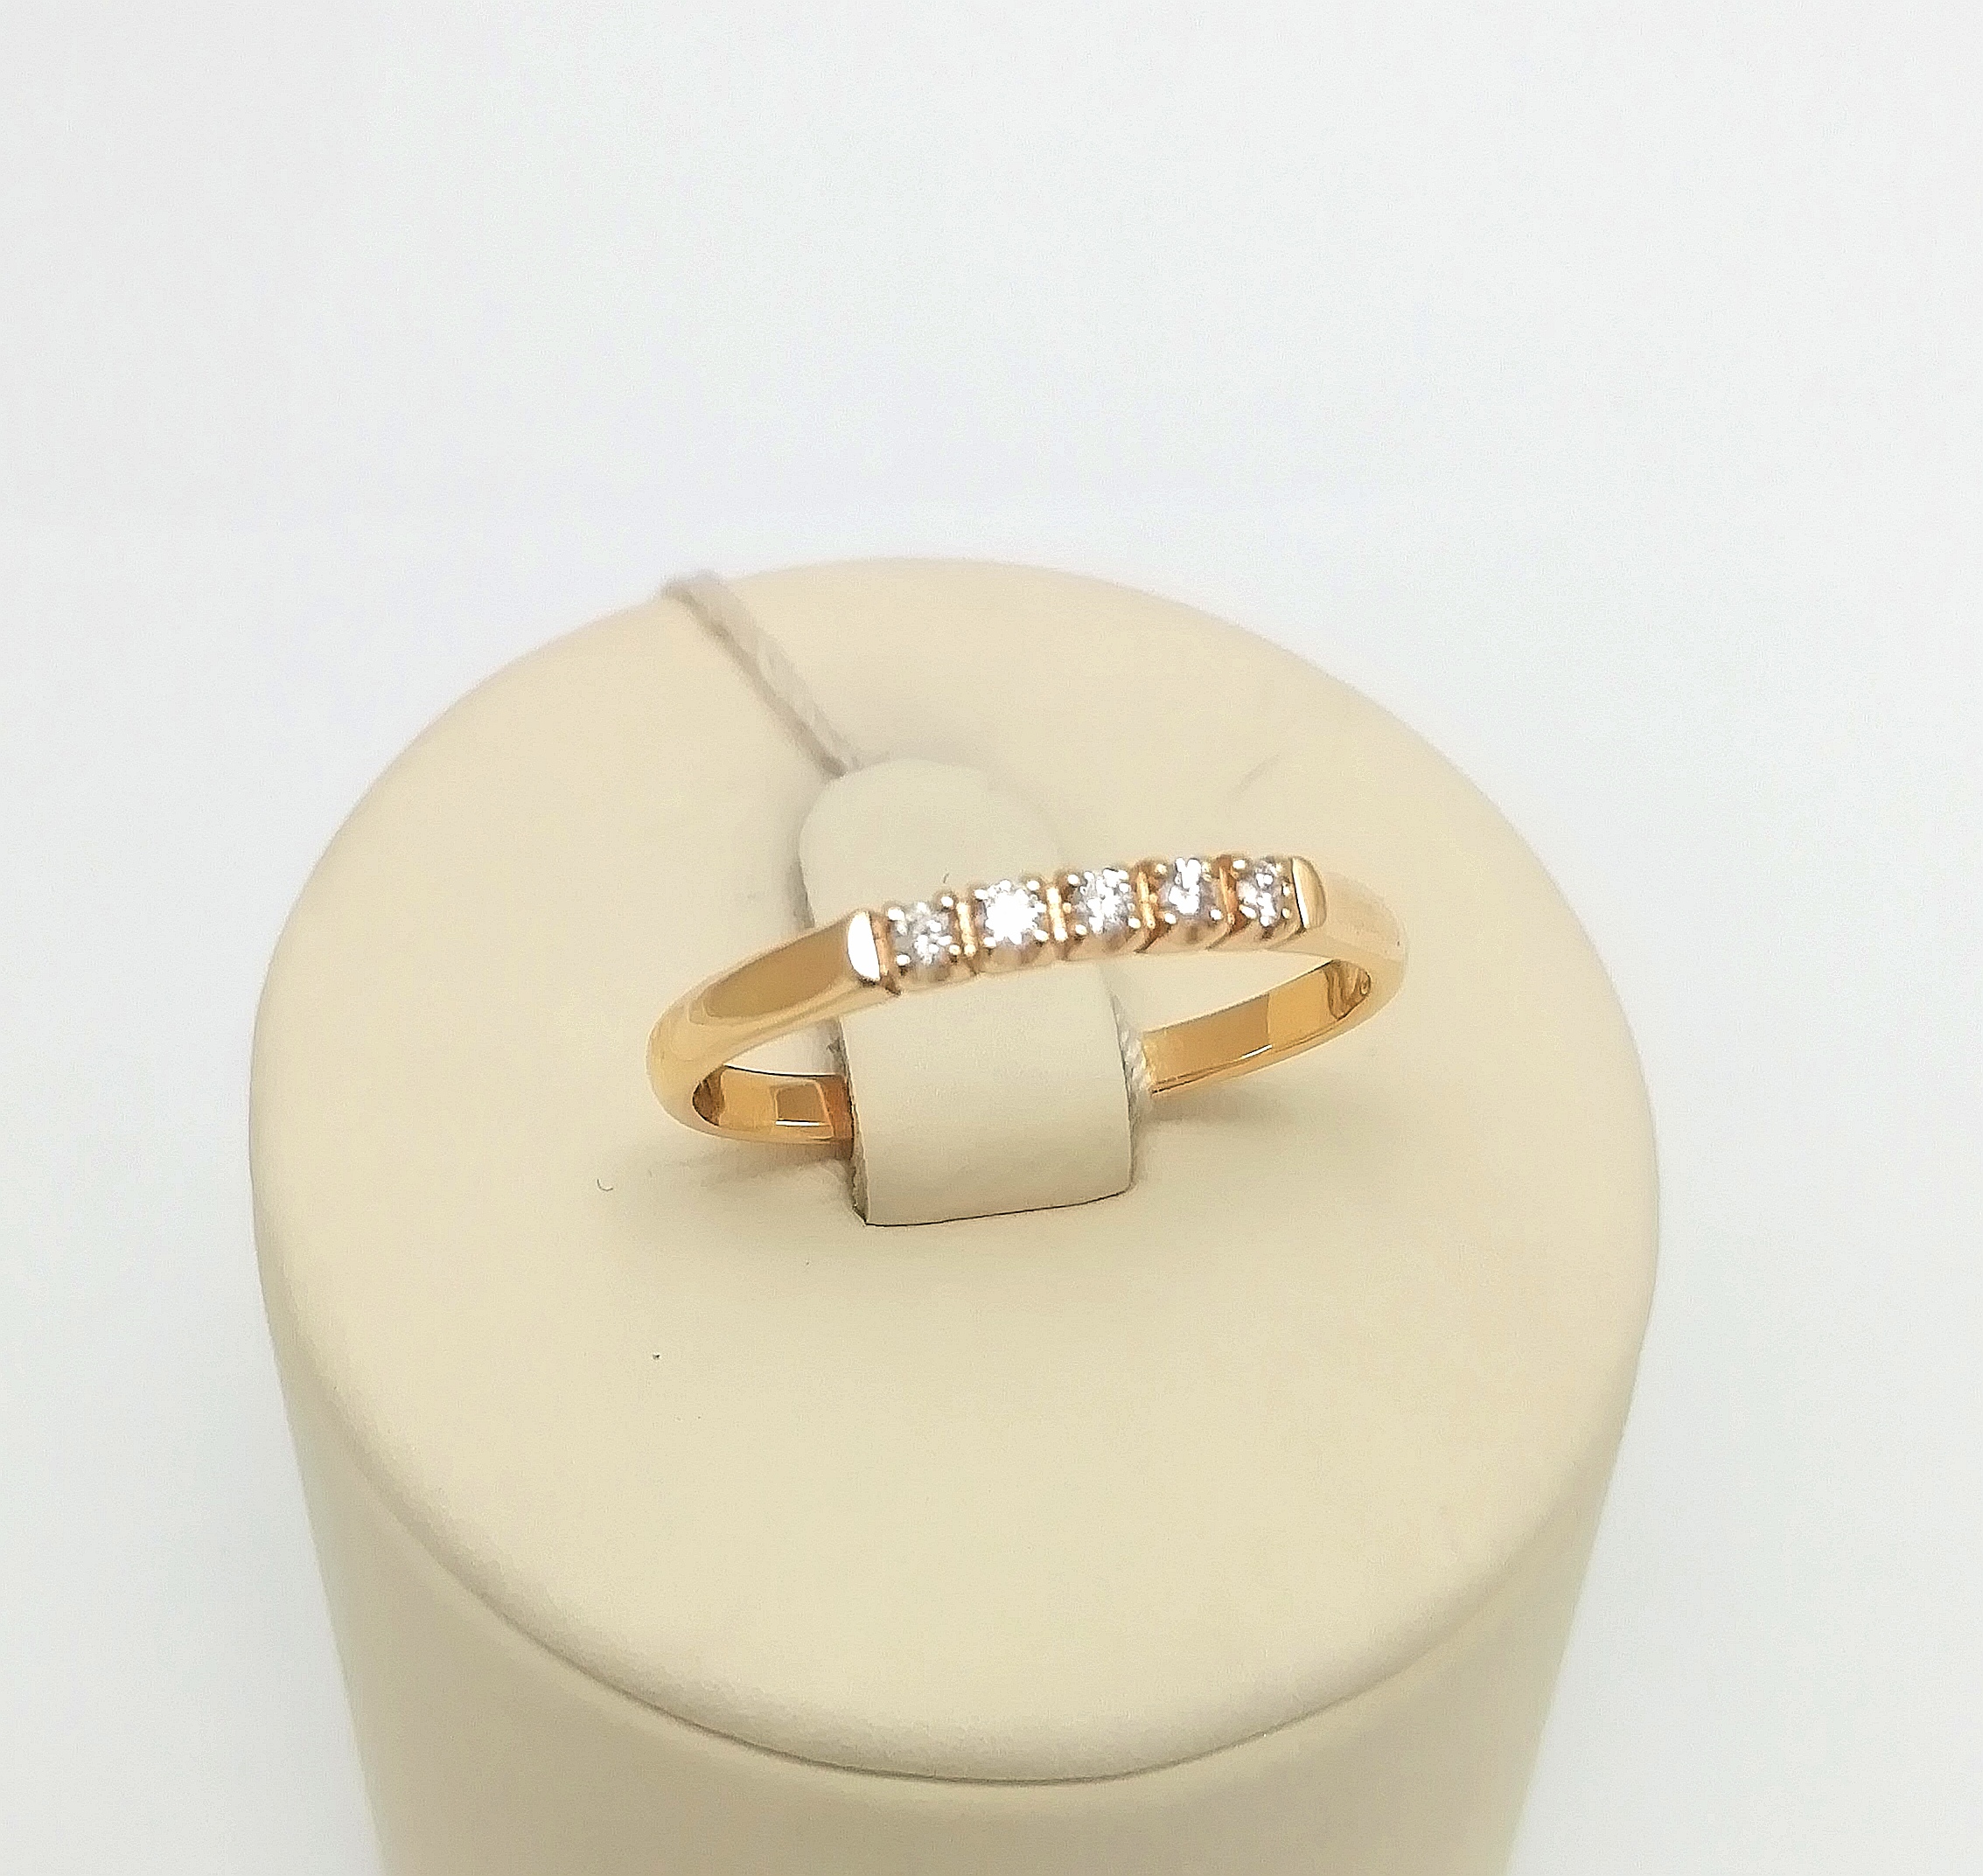 Классическое женское золотое кольцо с бриллиантами вз002136-7 1,51гр, вставка бриллиант